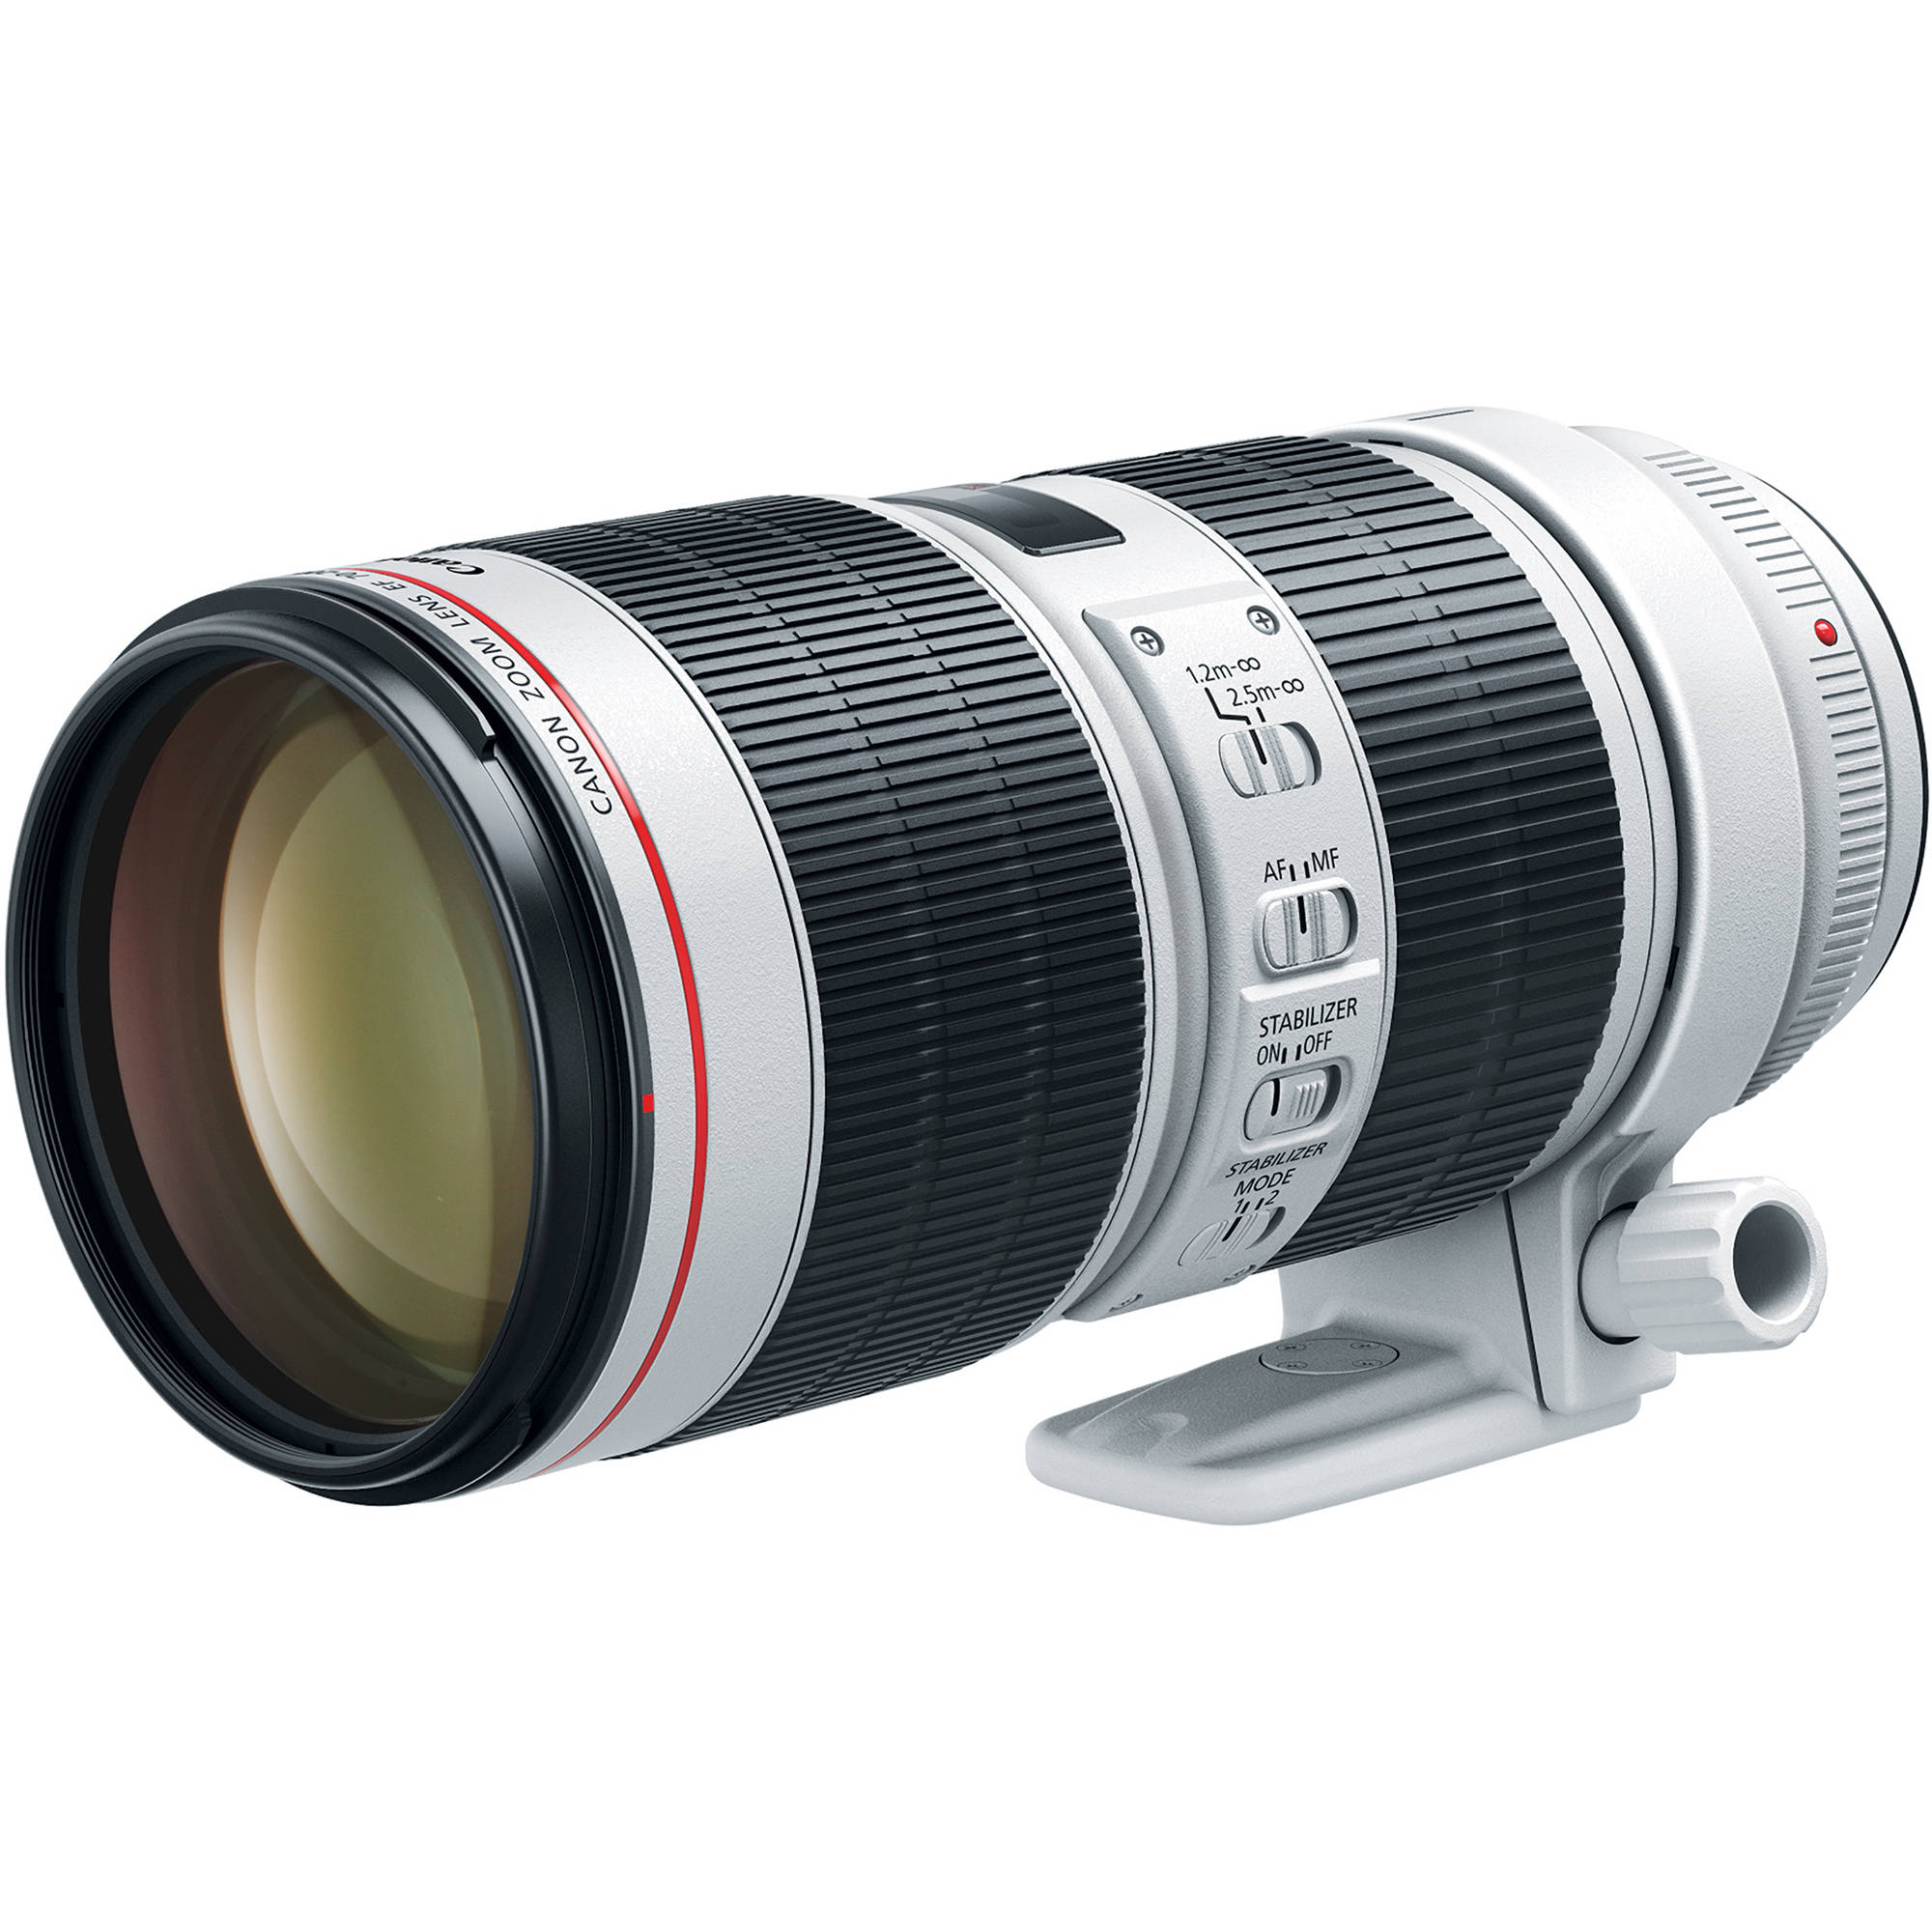 Canon EF 70-200mm f/2.8L IS III USM Lens 3044C002 B&H Photo Video